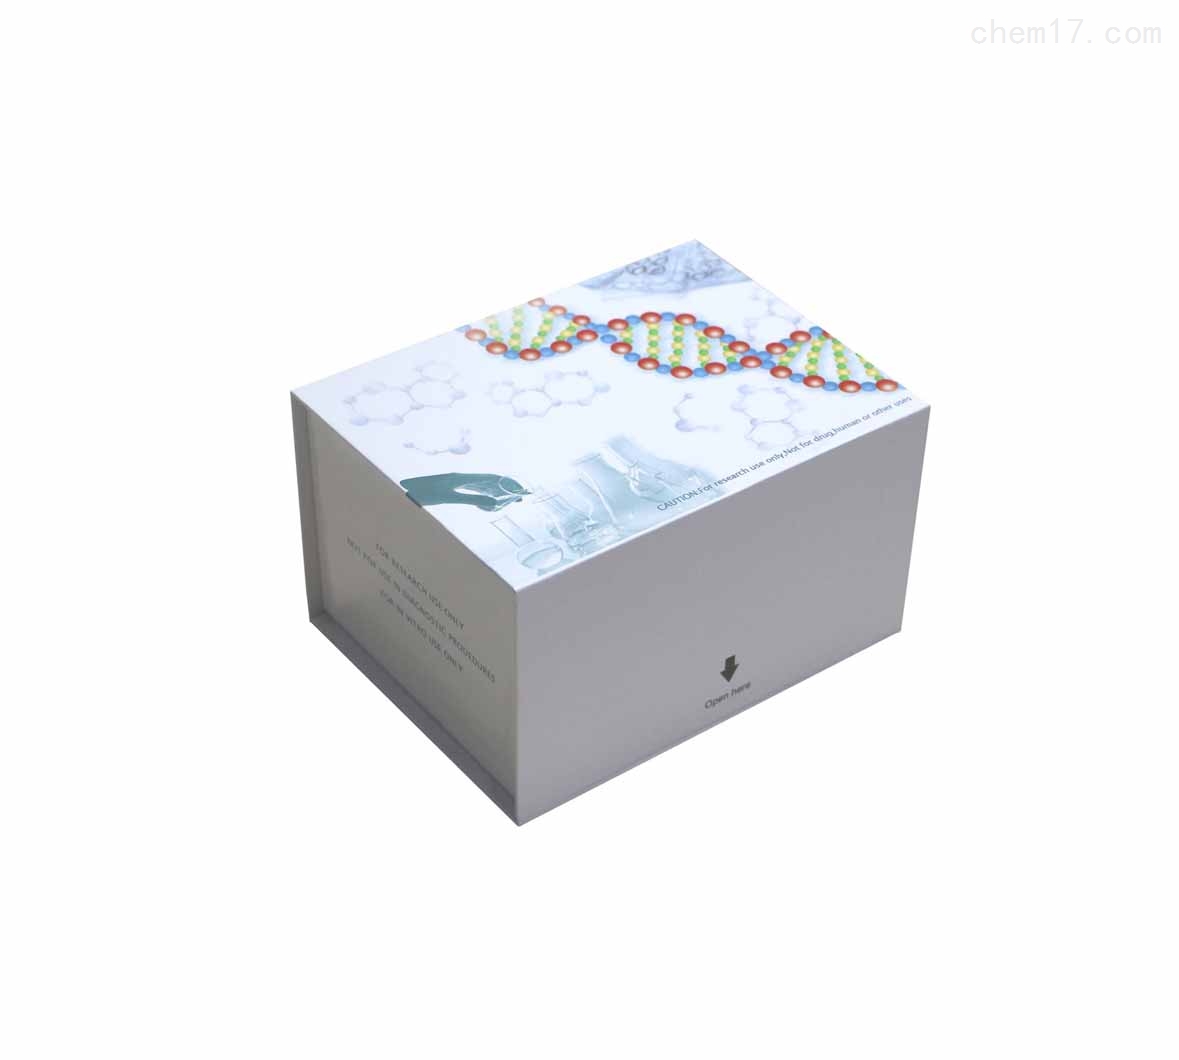 人γ干扰素诱导单核细胞因子(MIGF/CXCL9)ELISA试剂盒